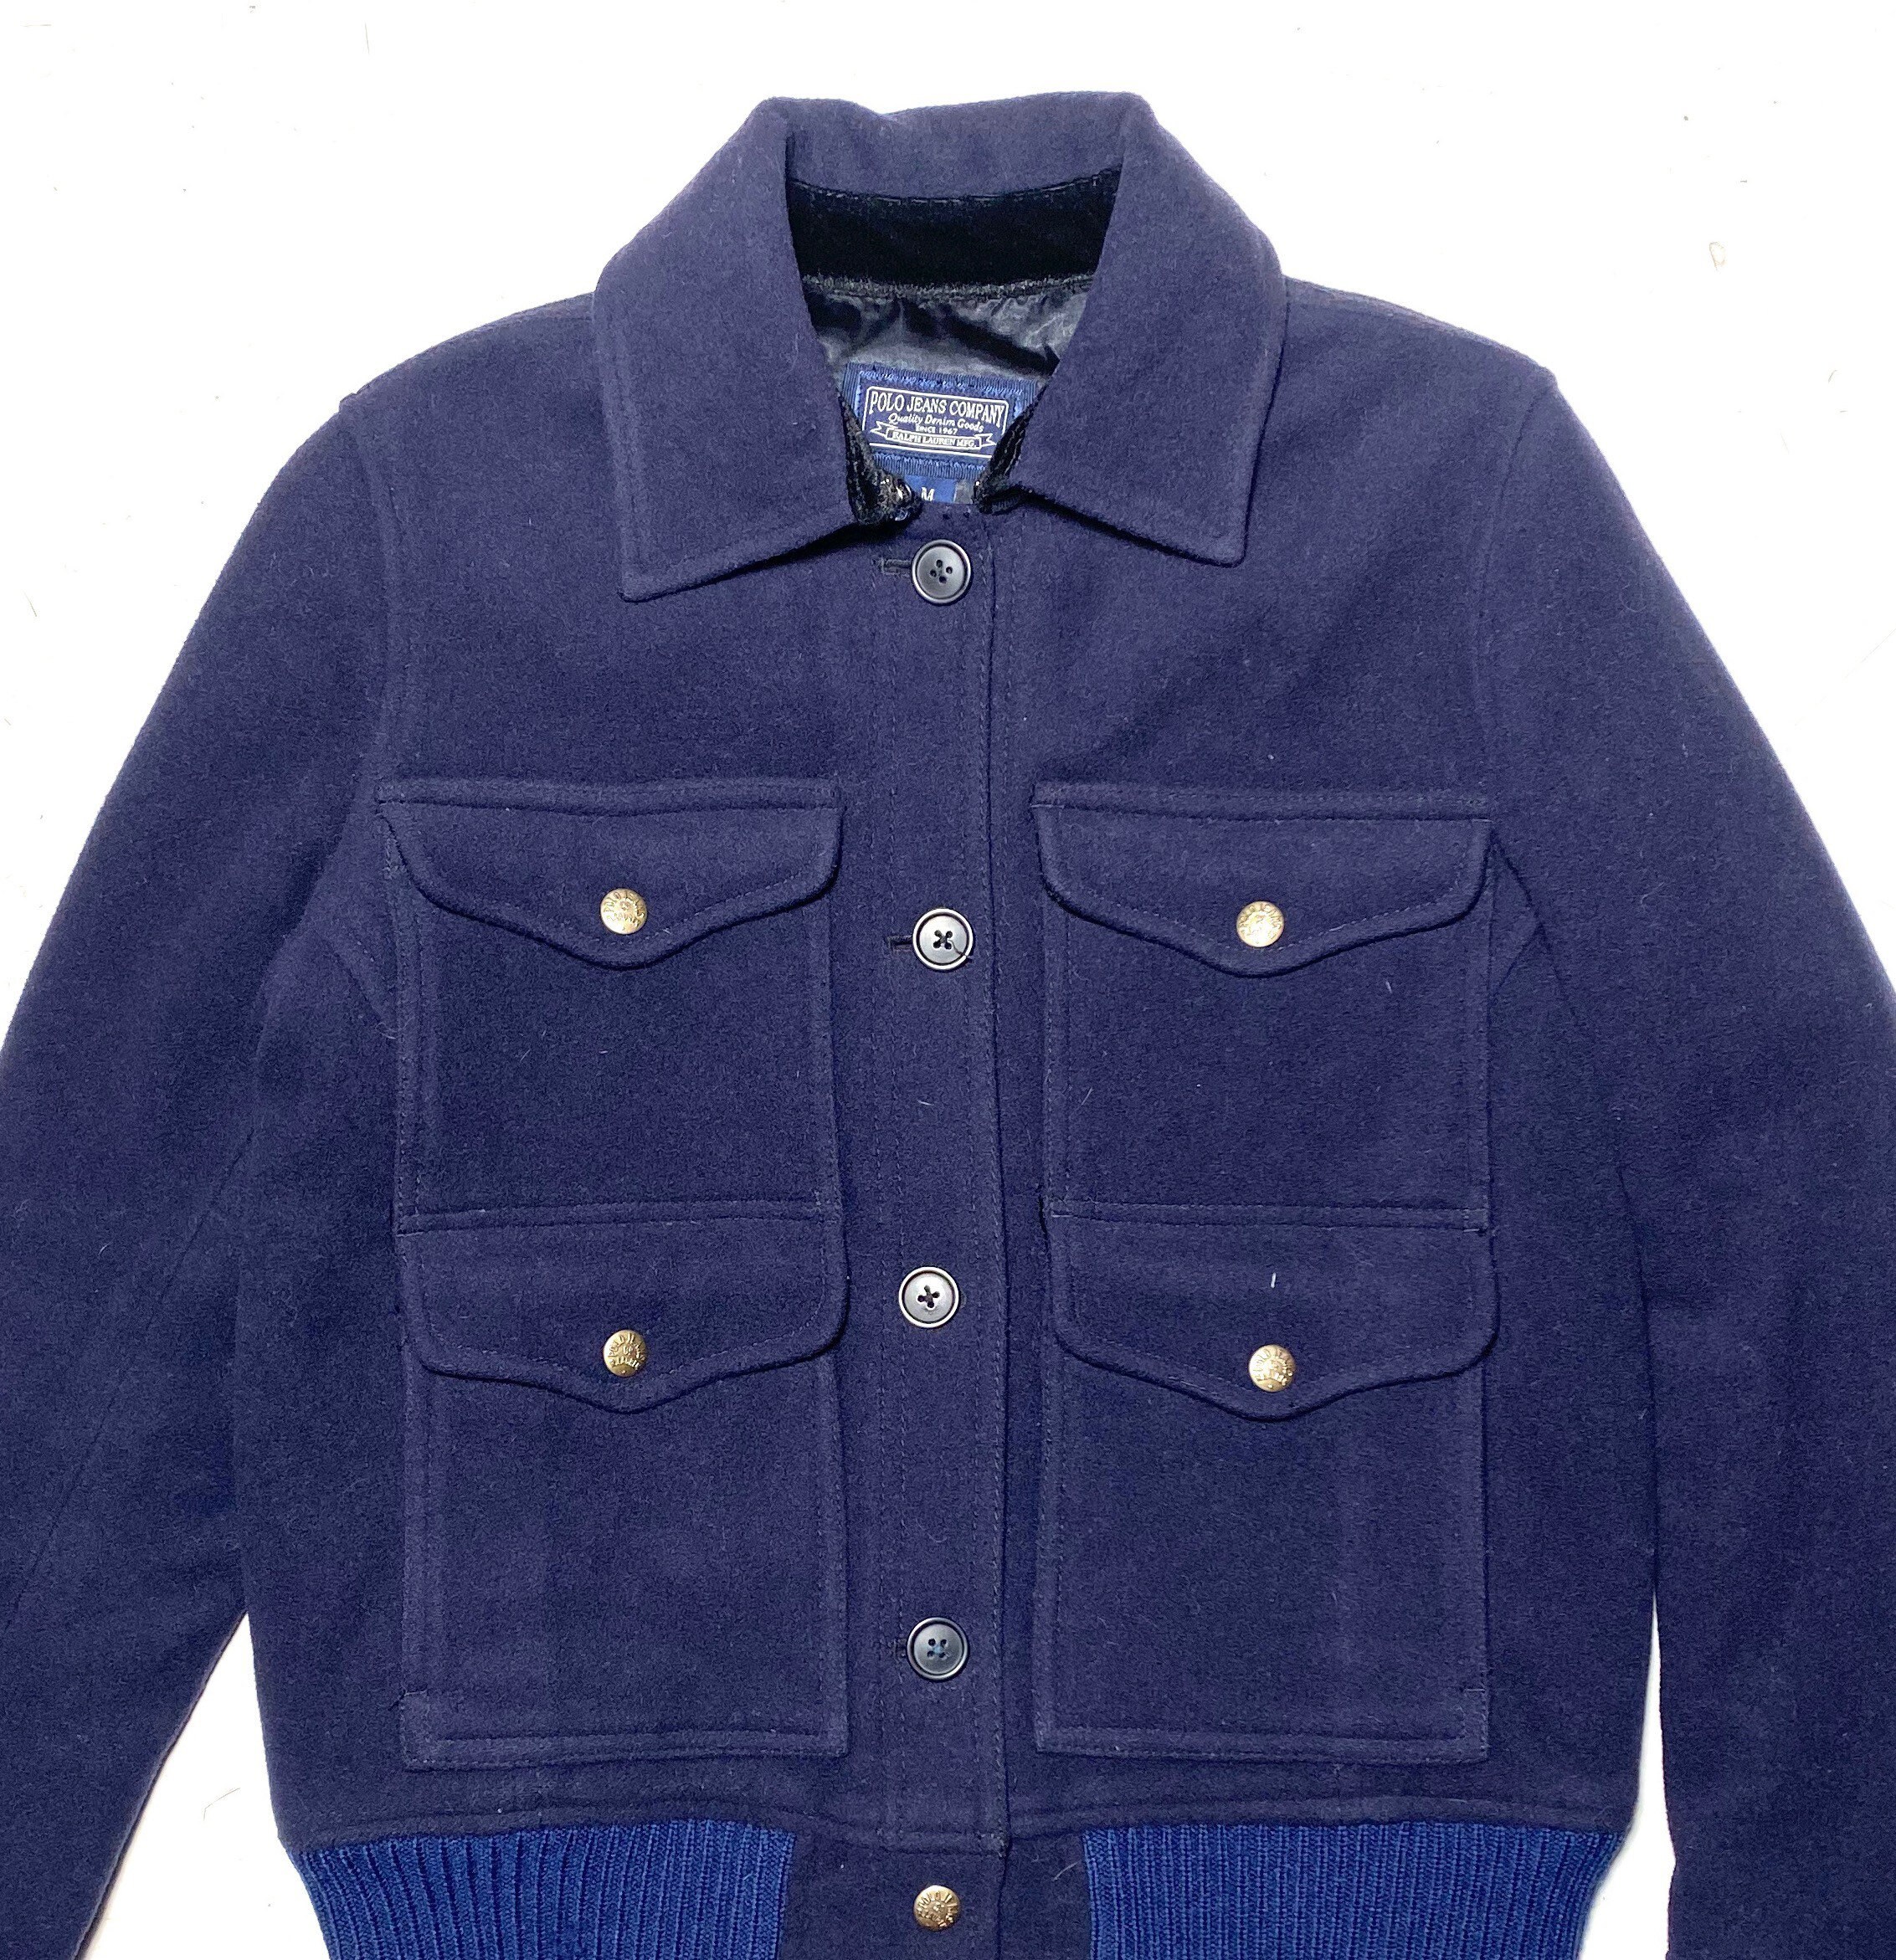 Polo Ralph Lauren navy wool jacket classic Harrington style sz | Etsy